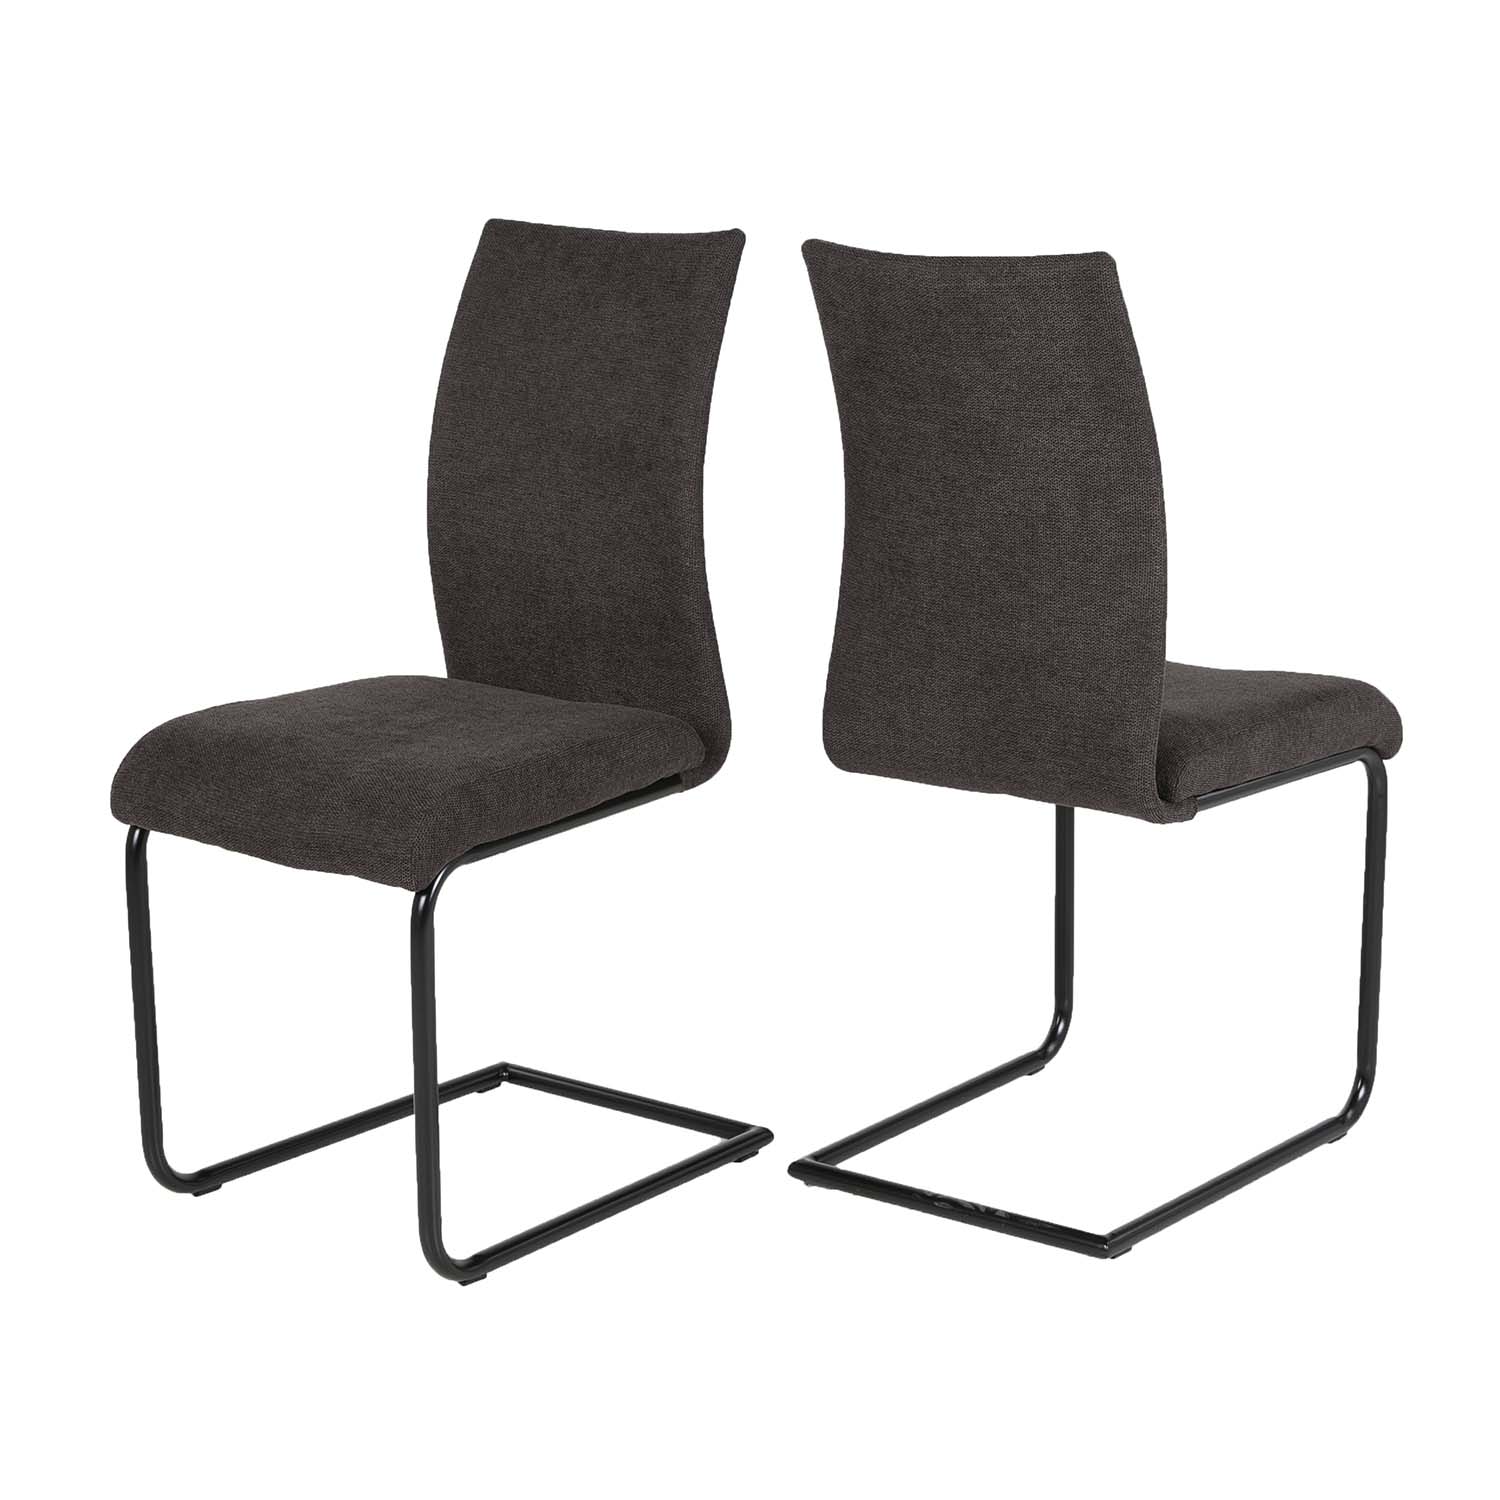 CANETT Stockholm spisebordsstol - grå polyester og sort metal-UDGÅET